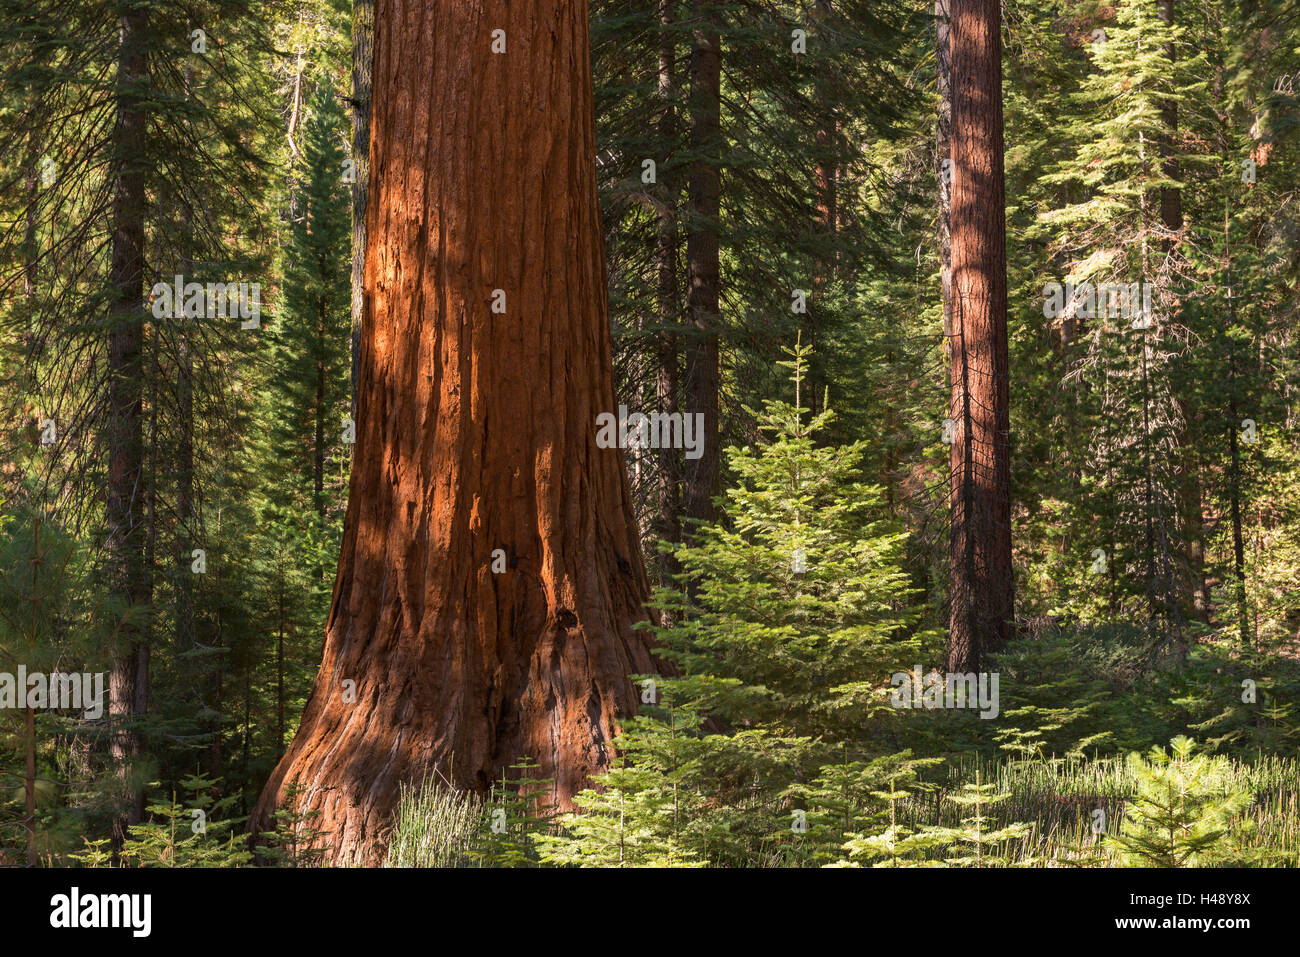 Riesenmammutbaum (Sequoiadendron Giganteum) in einem sonnendurchfluteten Wald, Mariposa Grove, Yosemite-Nationalpark, Kalifornien, USA. Herbst) Stockfoto